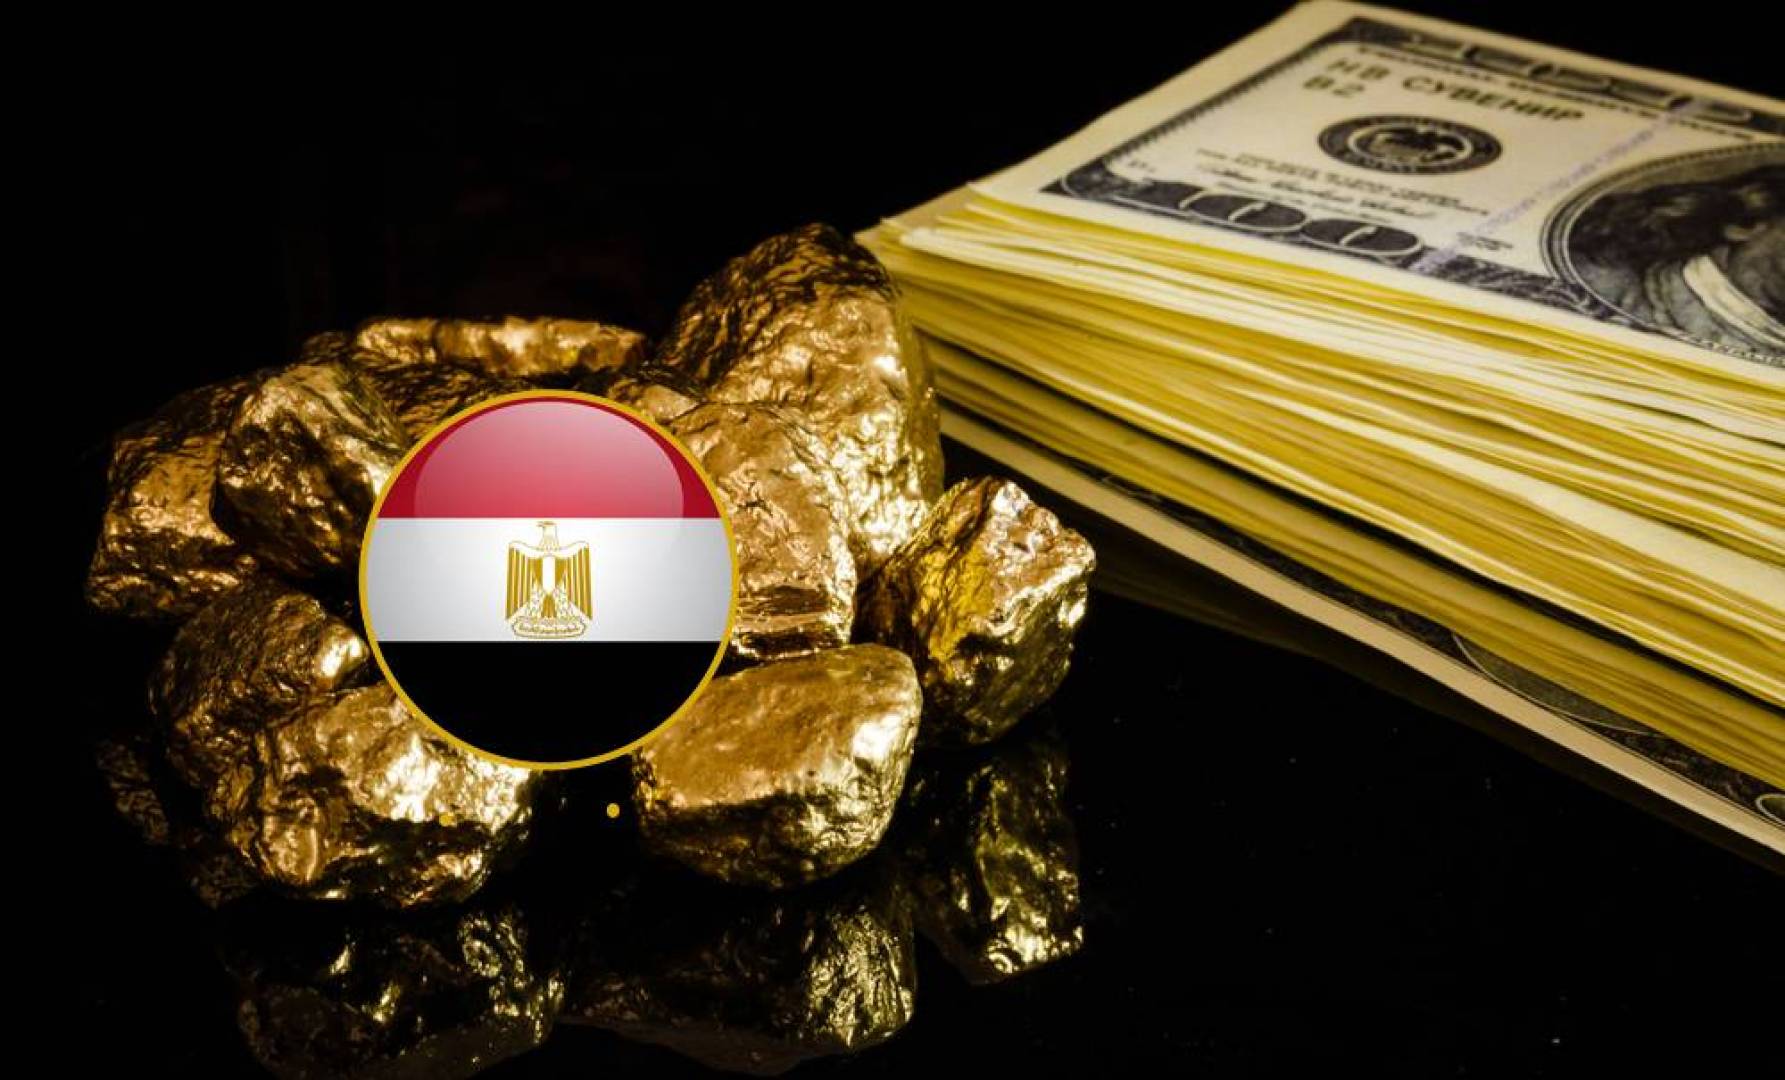 "يونيو الخير 2020" كشف جديد للذهب في مصر باحتياطي يزيد عن مليون أوقية ووزارة البترول تكشف بالتفاصيل 5